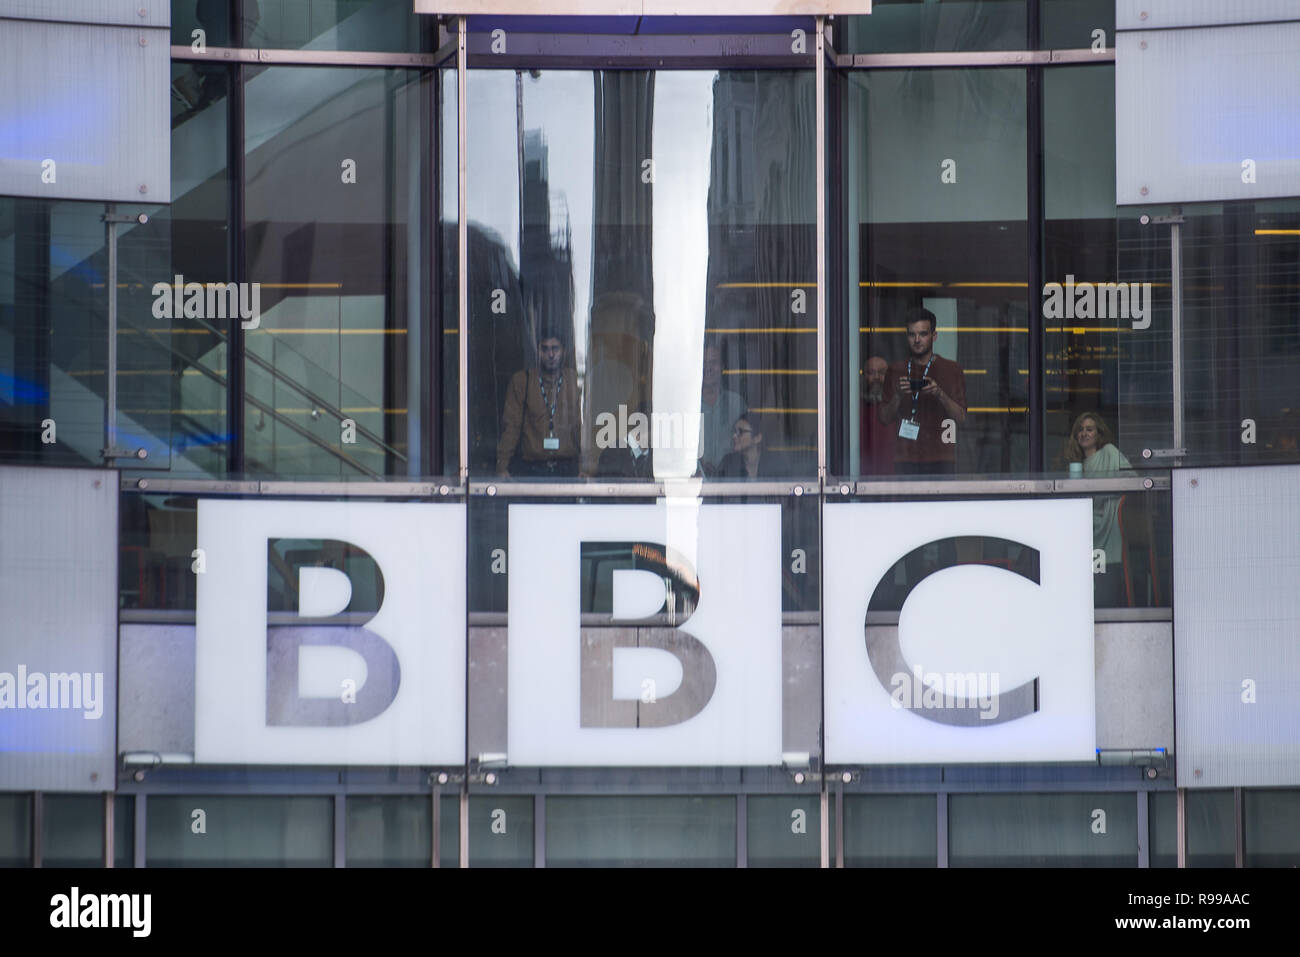 Lo staff di BBC guarda da windows durante una manifestazione di protesta dalla ribellione di estinzione al di fuori del gruppo della BBC Broadcasting House di Londra, durante una manifestazione di protesta contro il loro modo di pensare l'emittente copre il "Emergenza climatica". Foto Stock